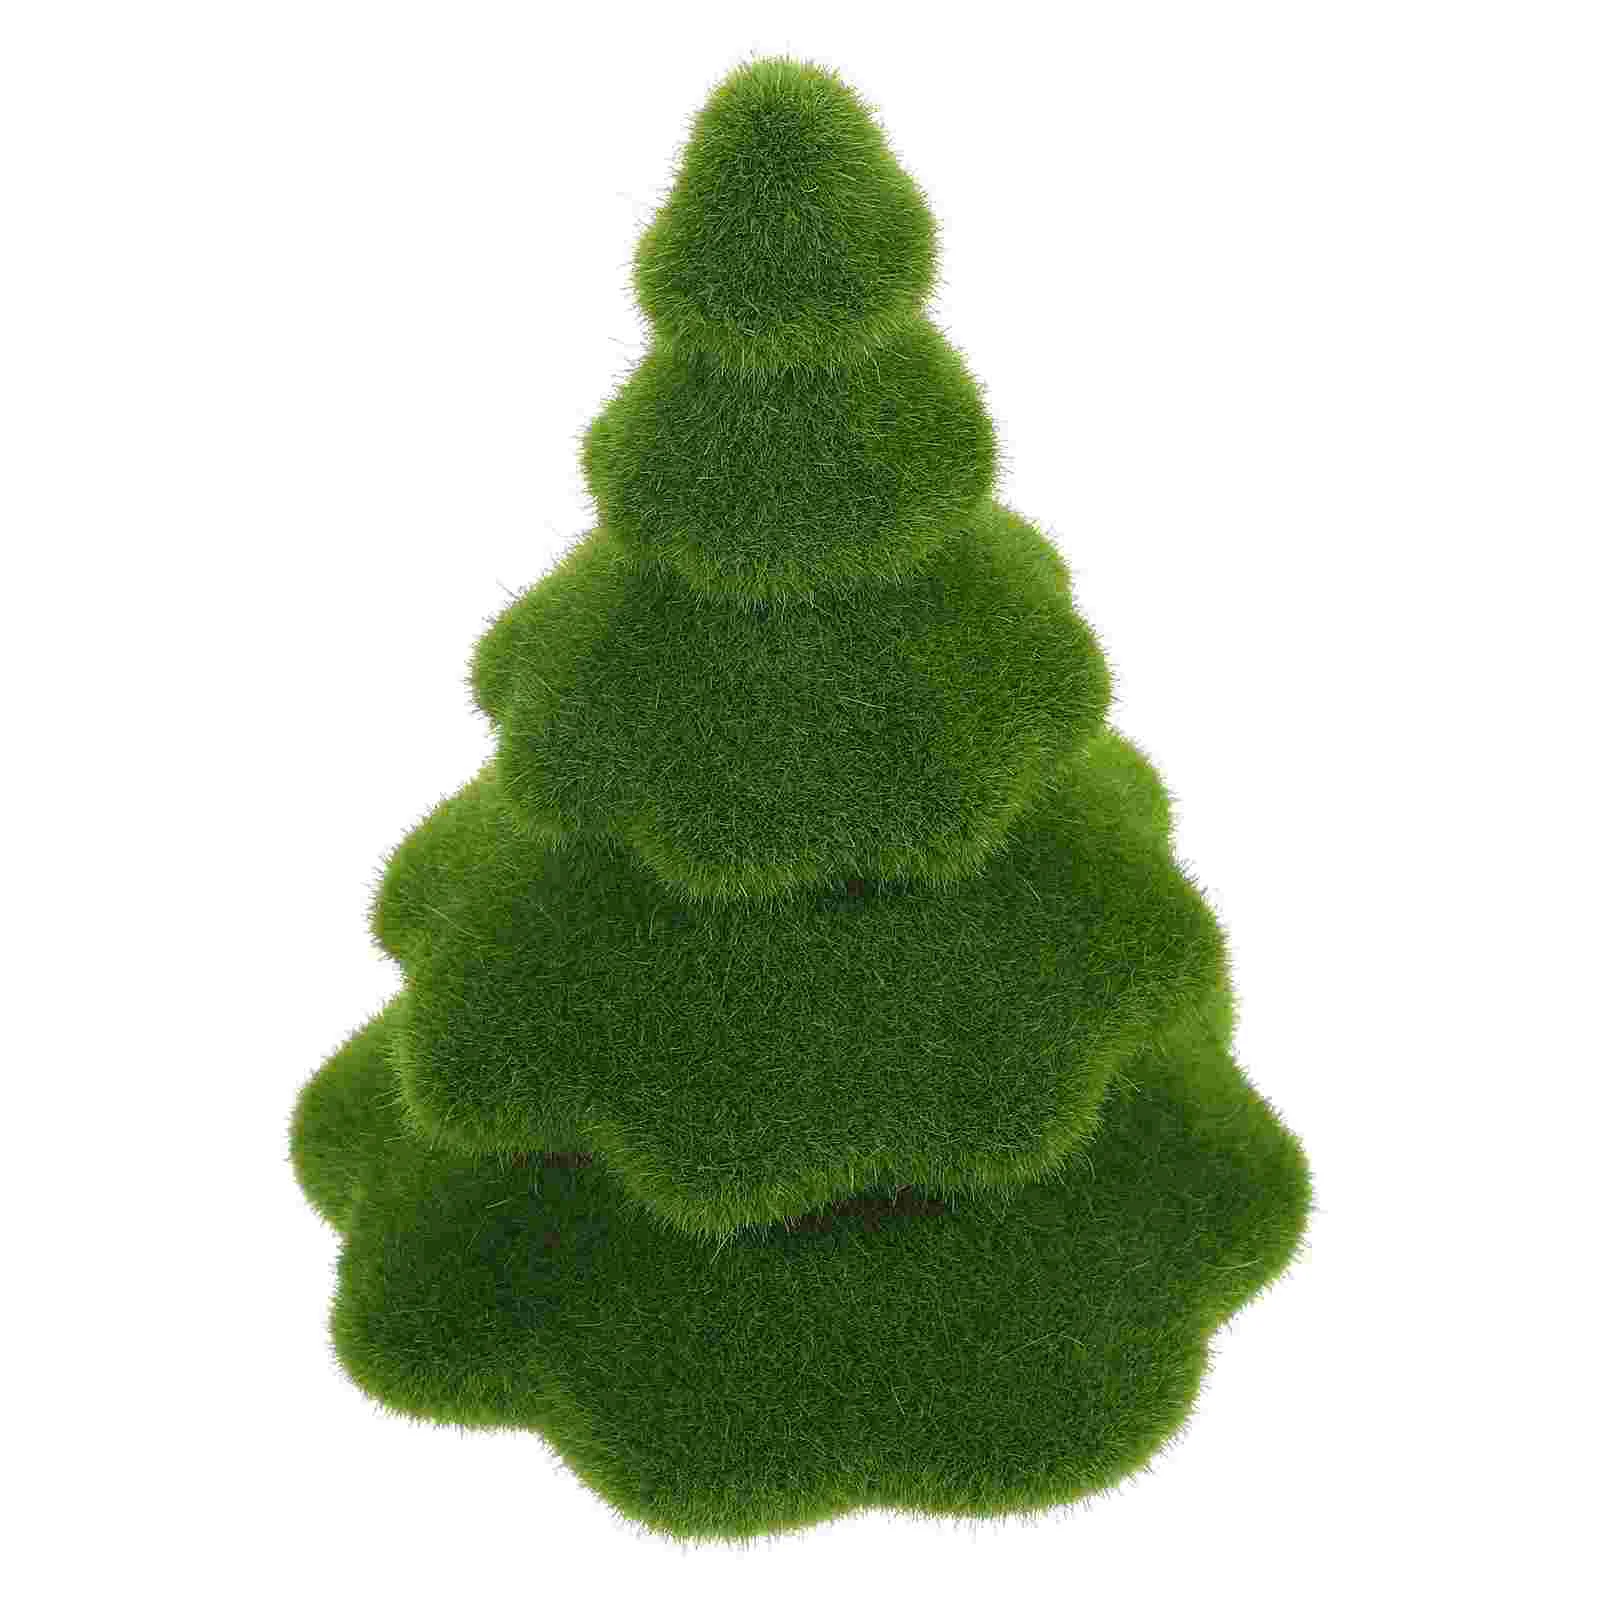 Имитация украшения из искусственной Рождественской елки, Замшелая Рождественская елка для вечеринки (17x12 см)